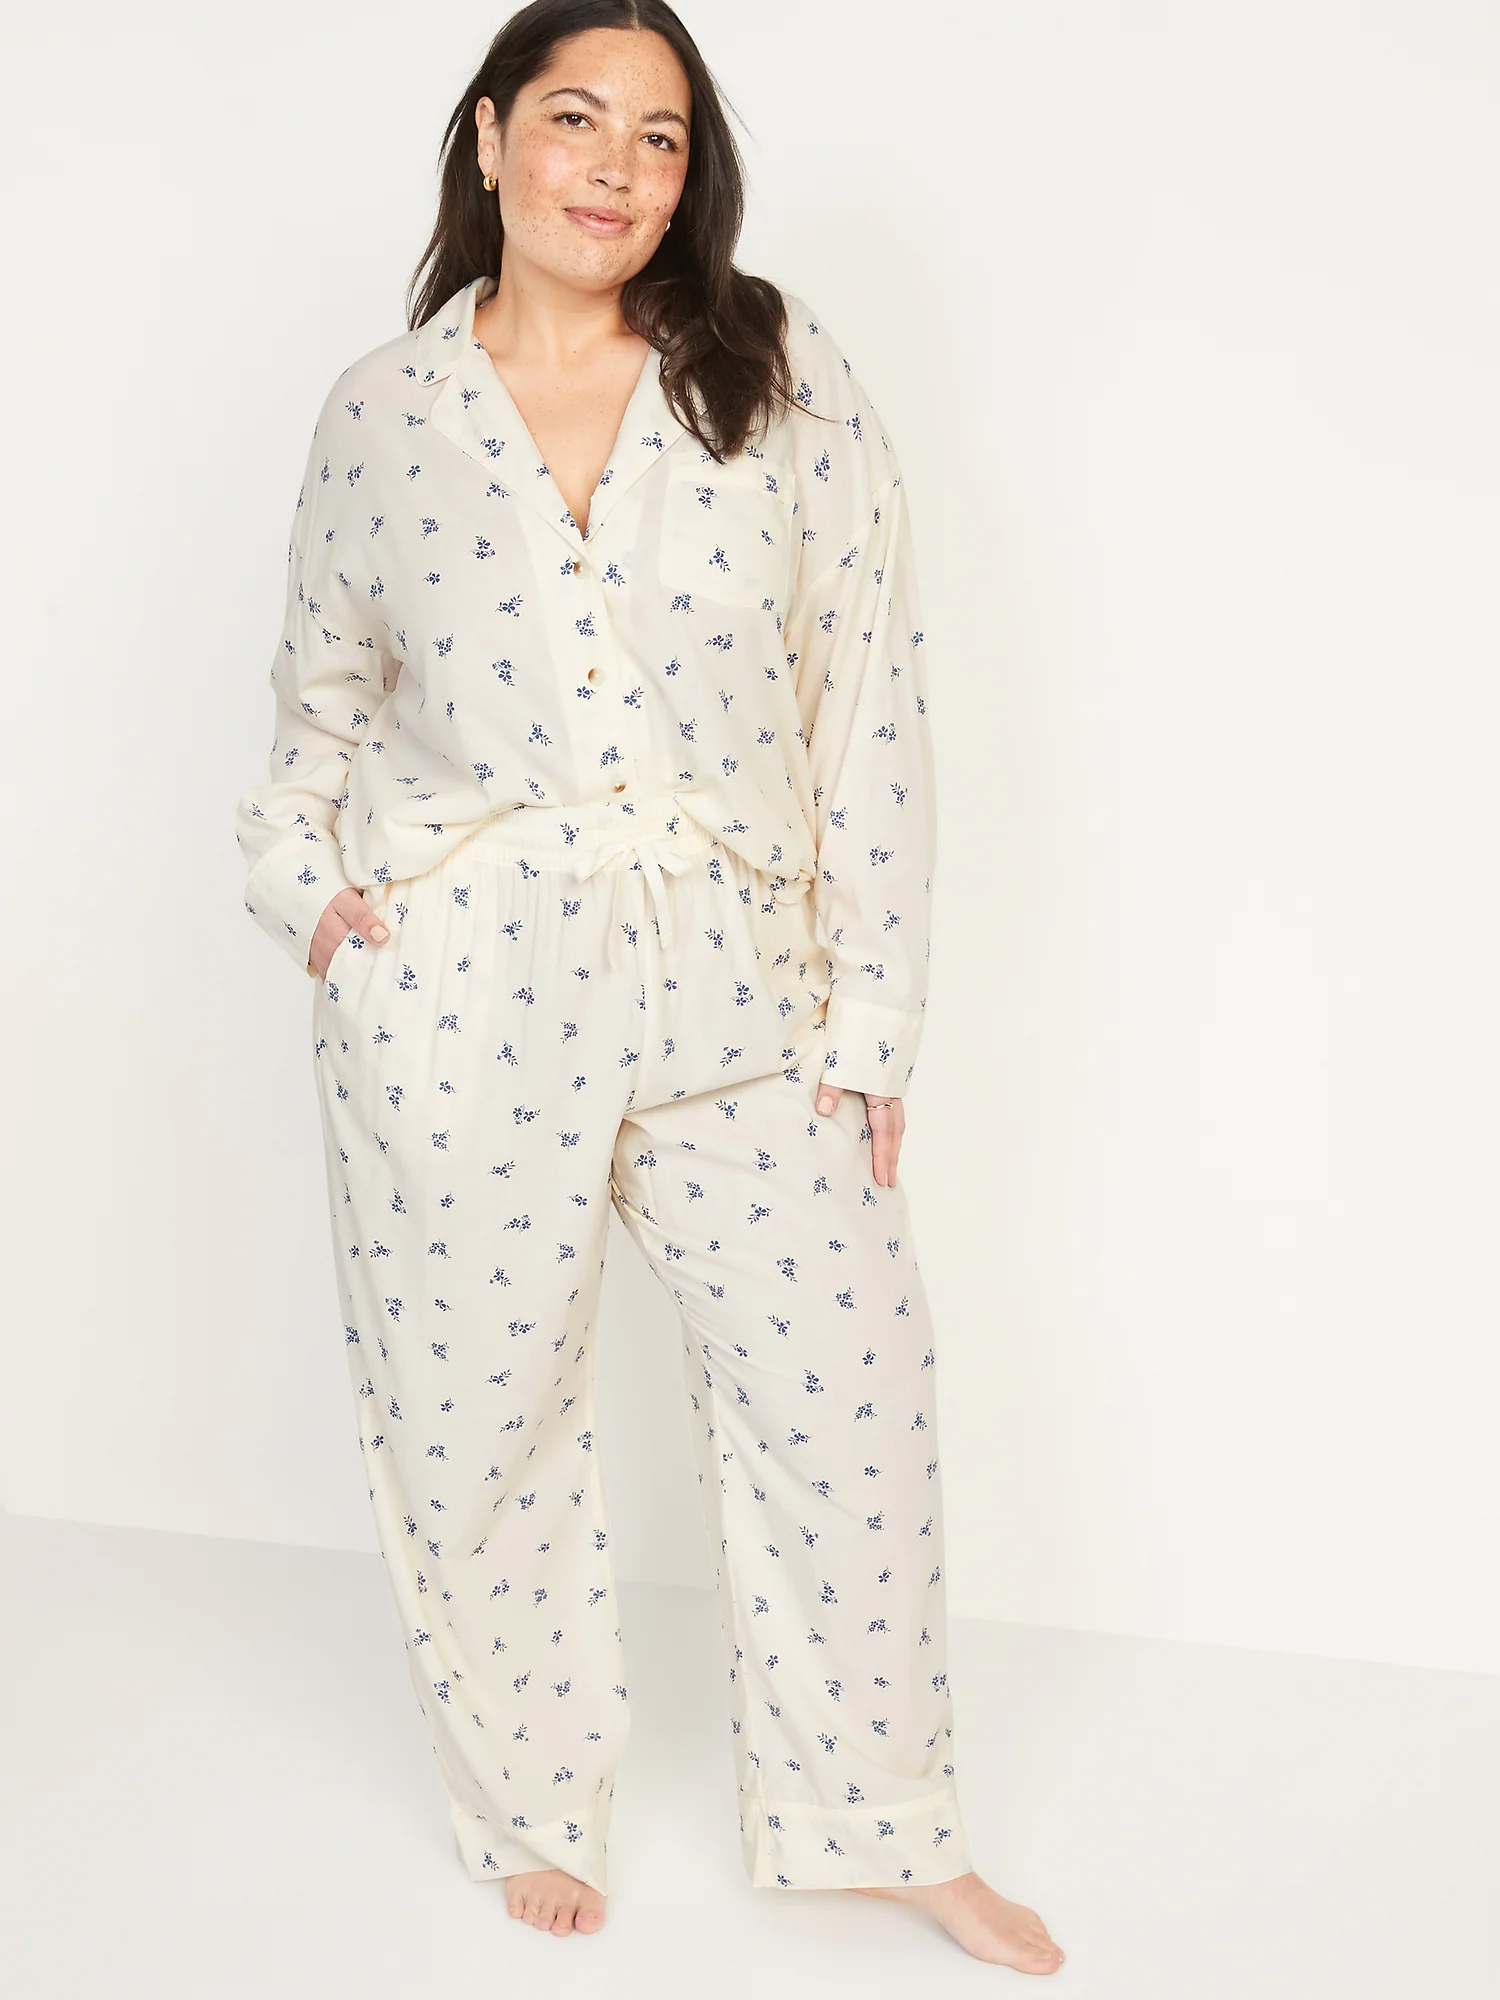 Old Navy Matching Printed Pajama Set For Women 